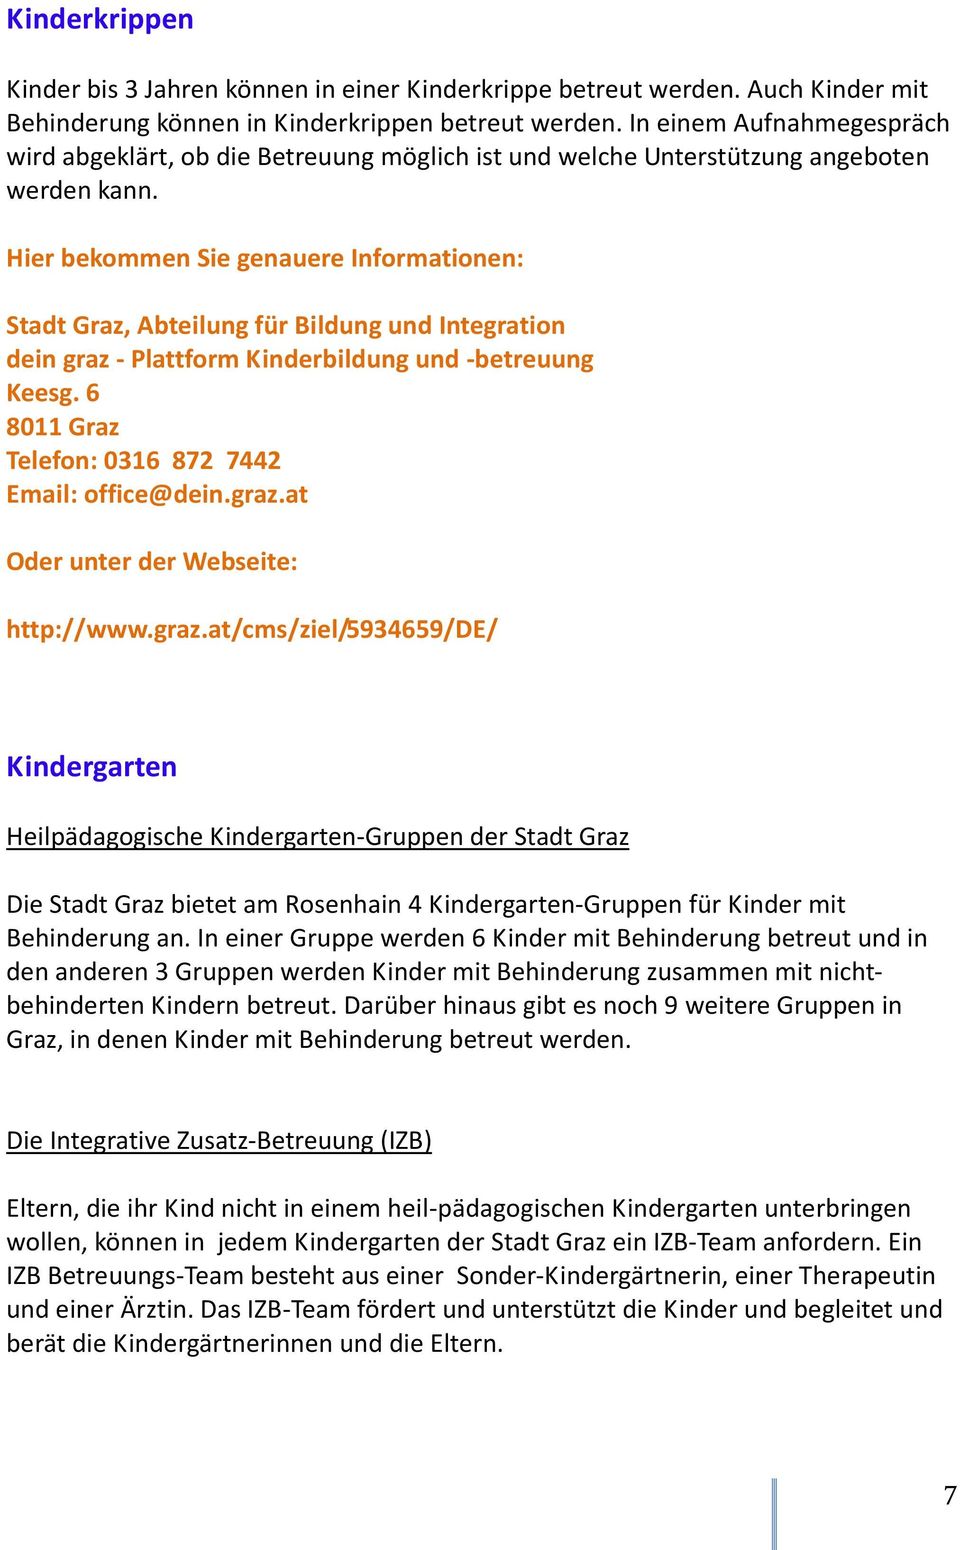 Stadt Graz, Abteilung für Bildung und Integration dein graz - Plattform Kinderbildung und -betreuung Keesg. 6 8011 Graz Telefon: 0316 872 7442 Email: office@dein.graz.at Oder unter der Webseite: http://www.